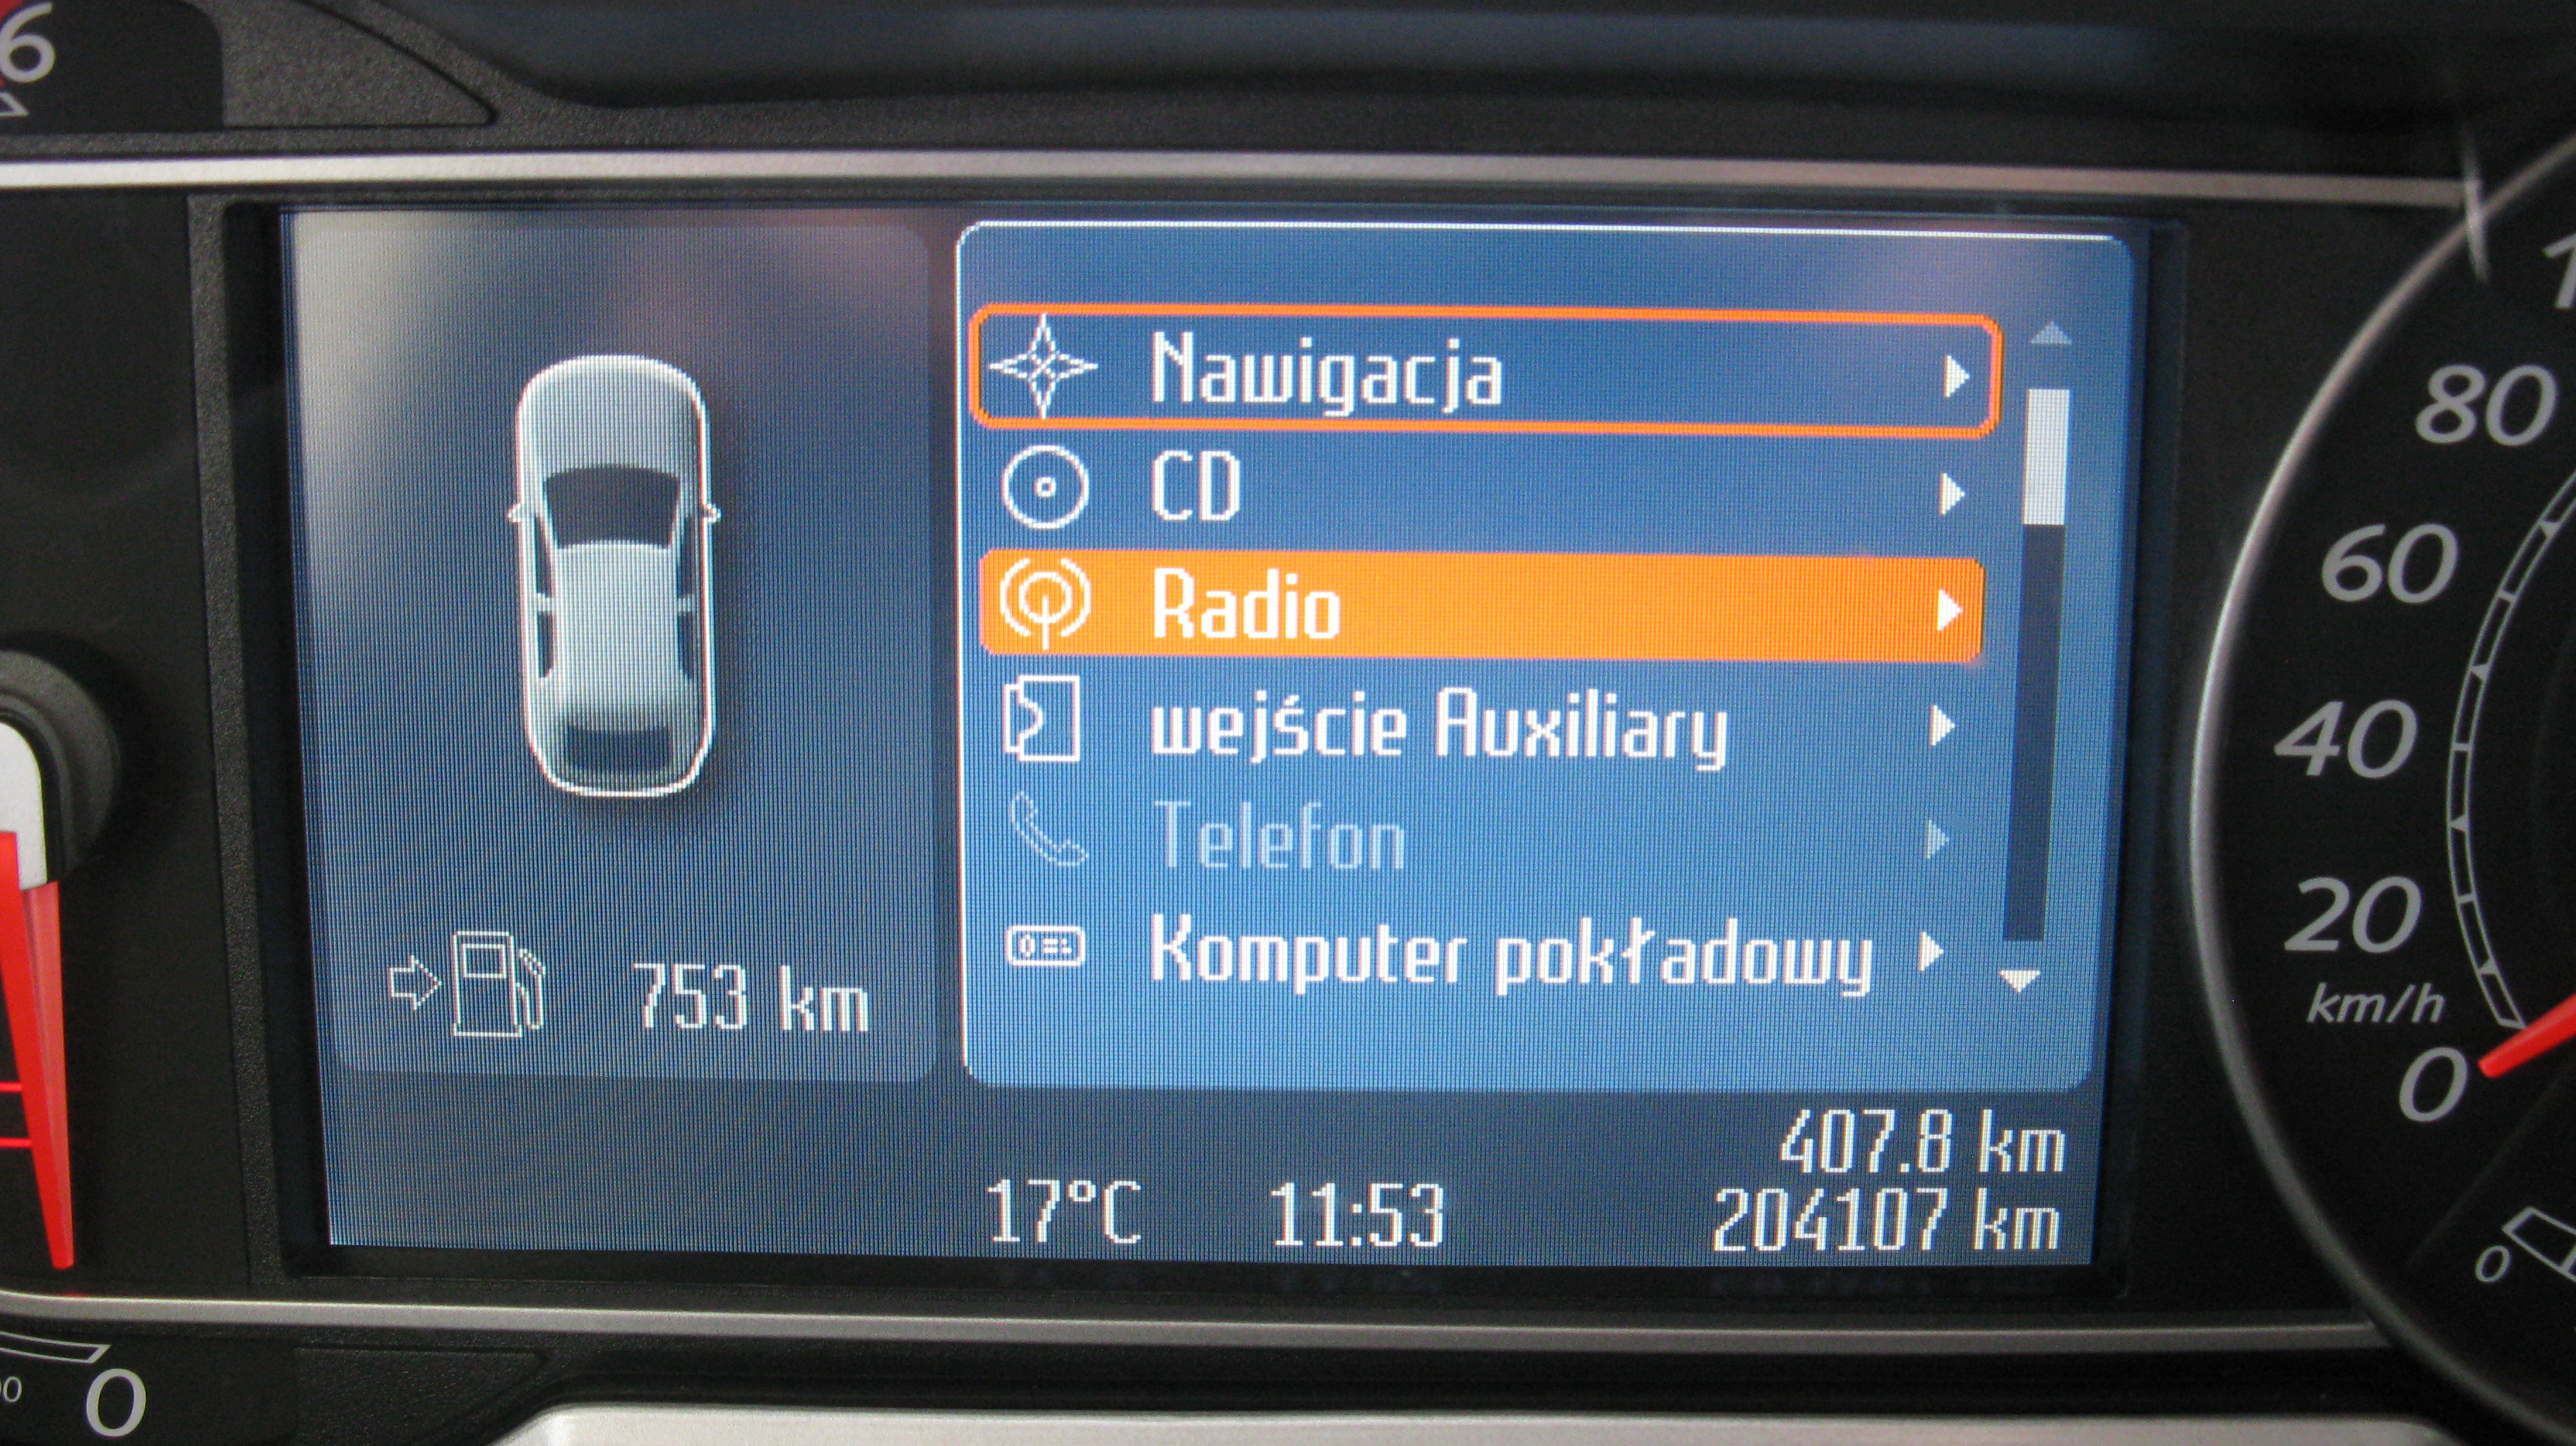 Ford Mondeo Mk4. Brak Ikon Na Wyświetlaczu. - Elektroda.pl